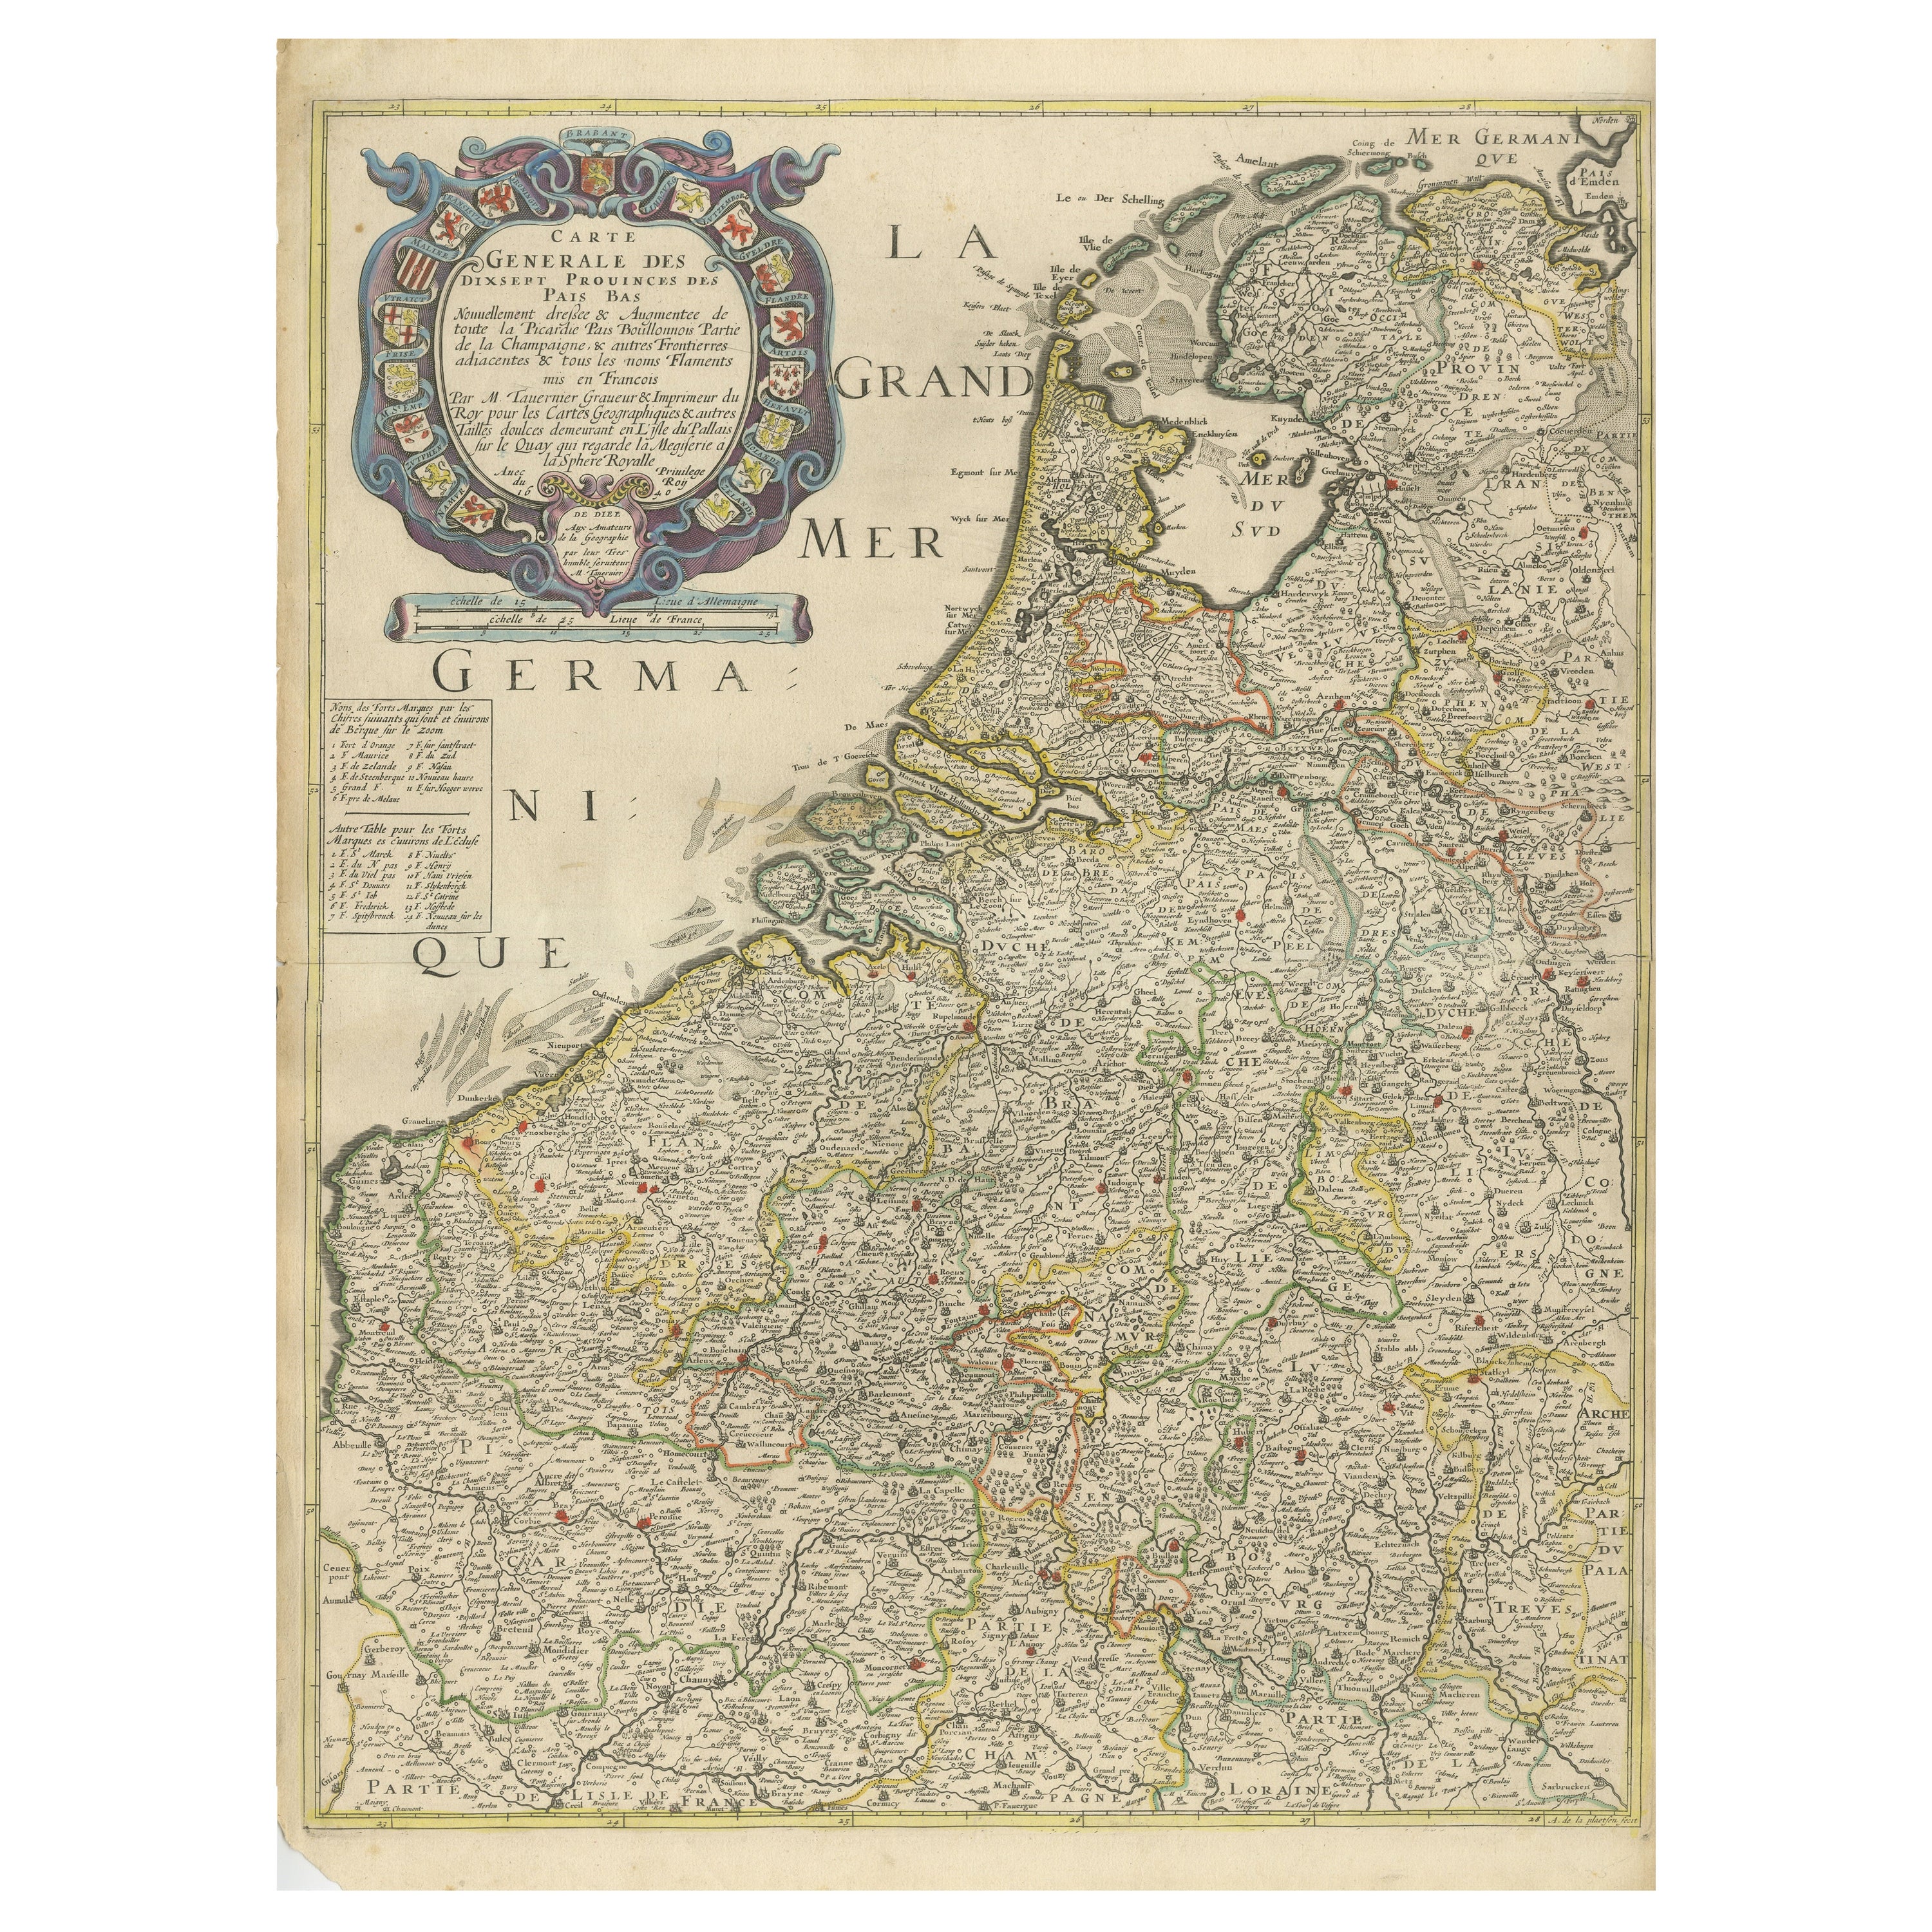 Seltene und frühe Karte der siebzehn Provinzen, veröffentlicht um 1640